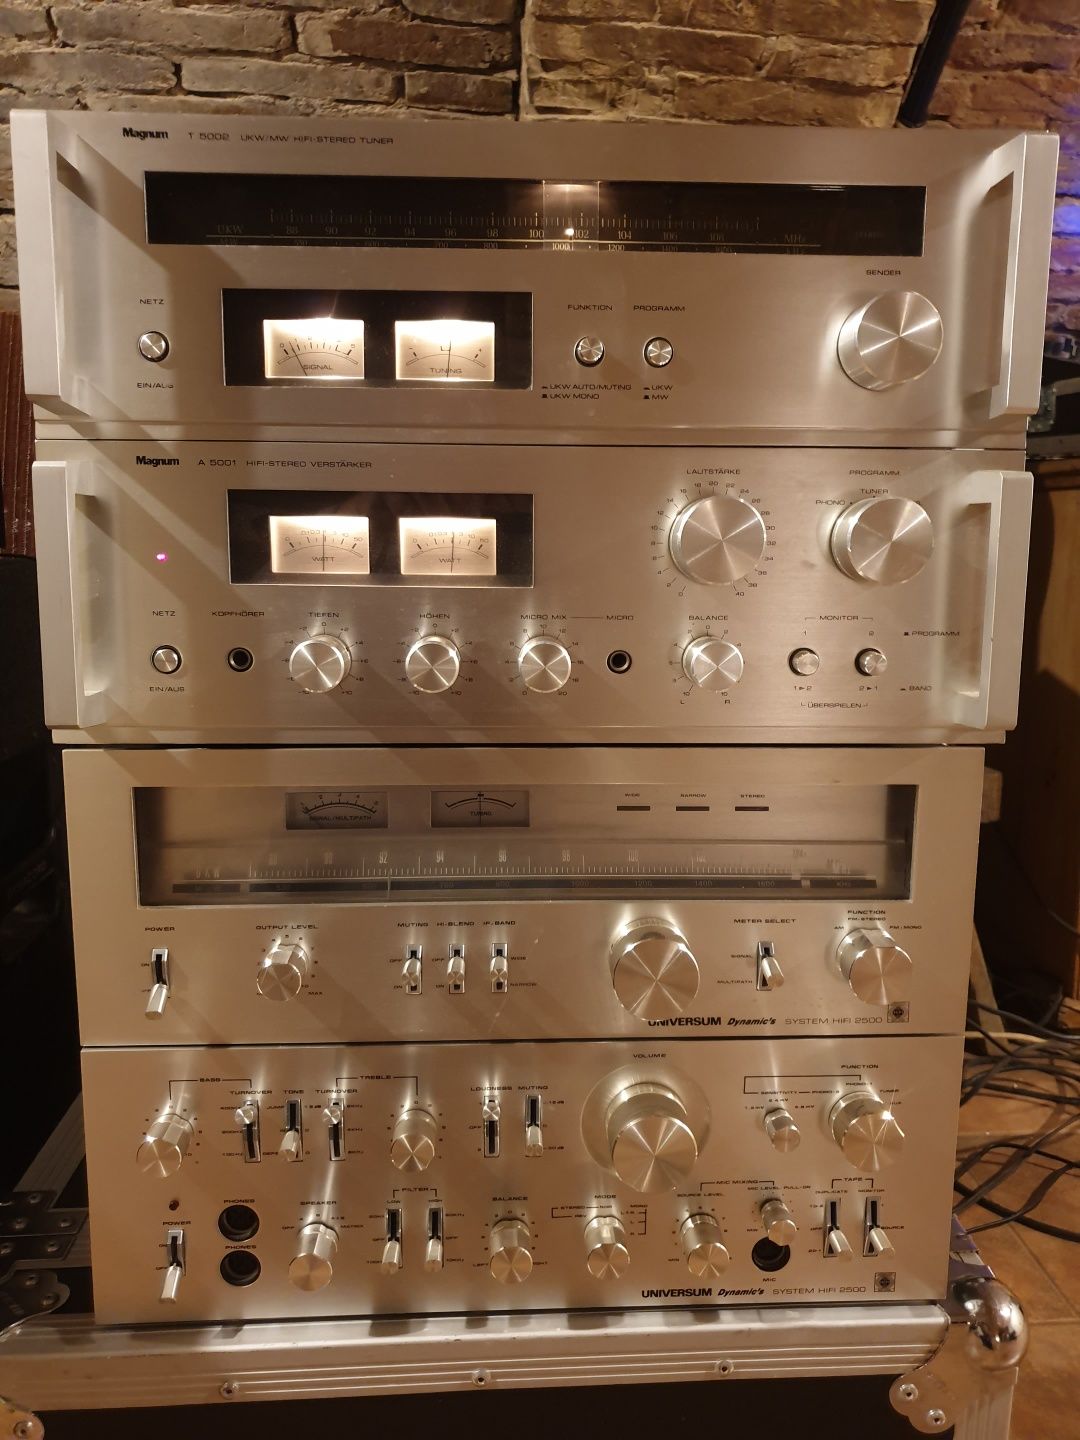 Sisteme audio Magnum A5001/Pioneer/Akai/Wega jps350v